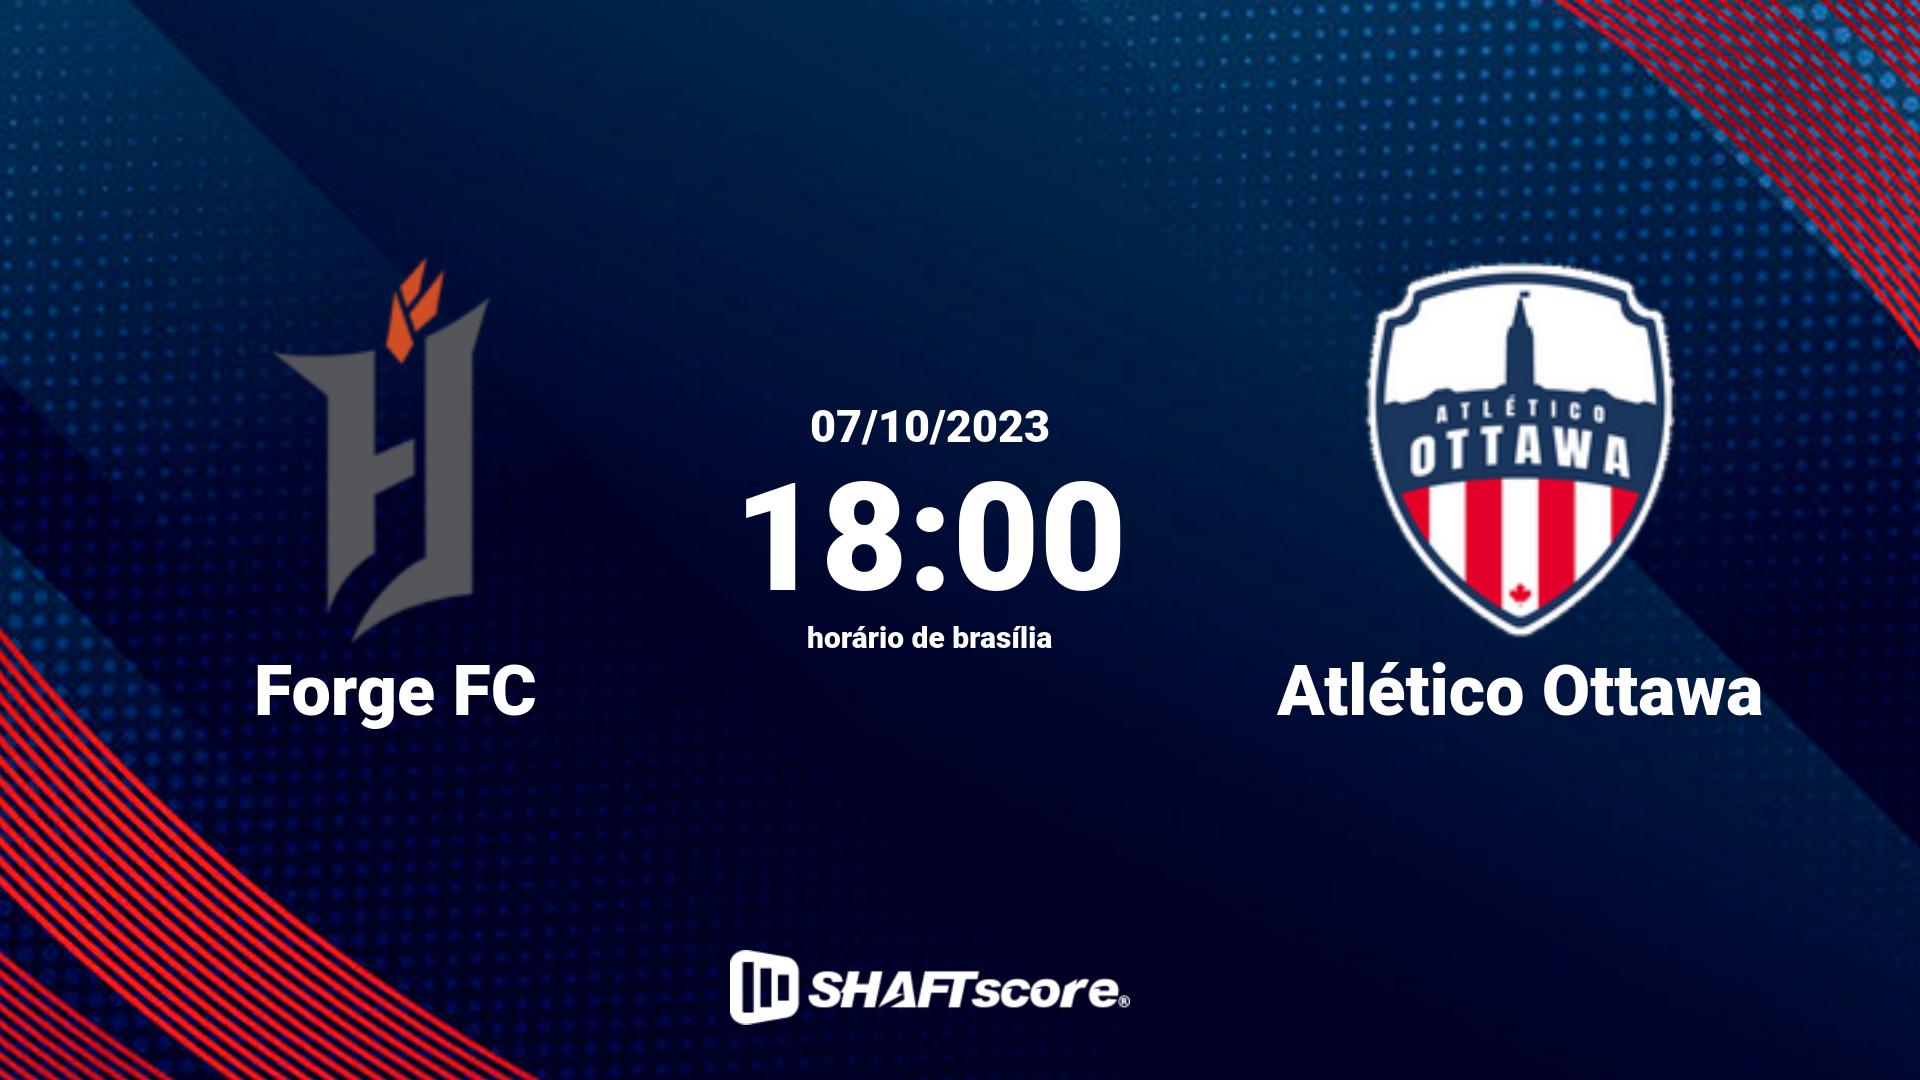 Estatísticas do jogo Forge FC vs Atlético Ottawa 07.10 18:00